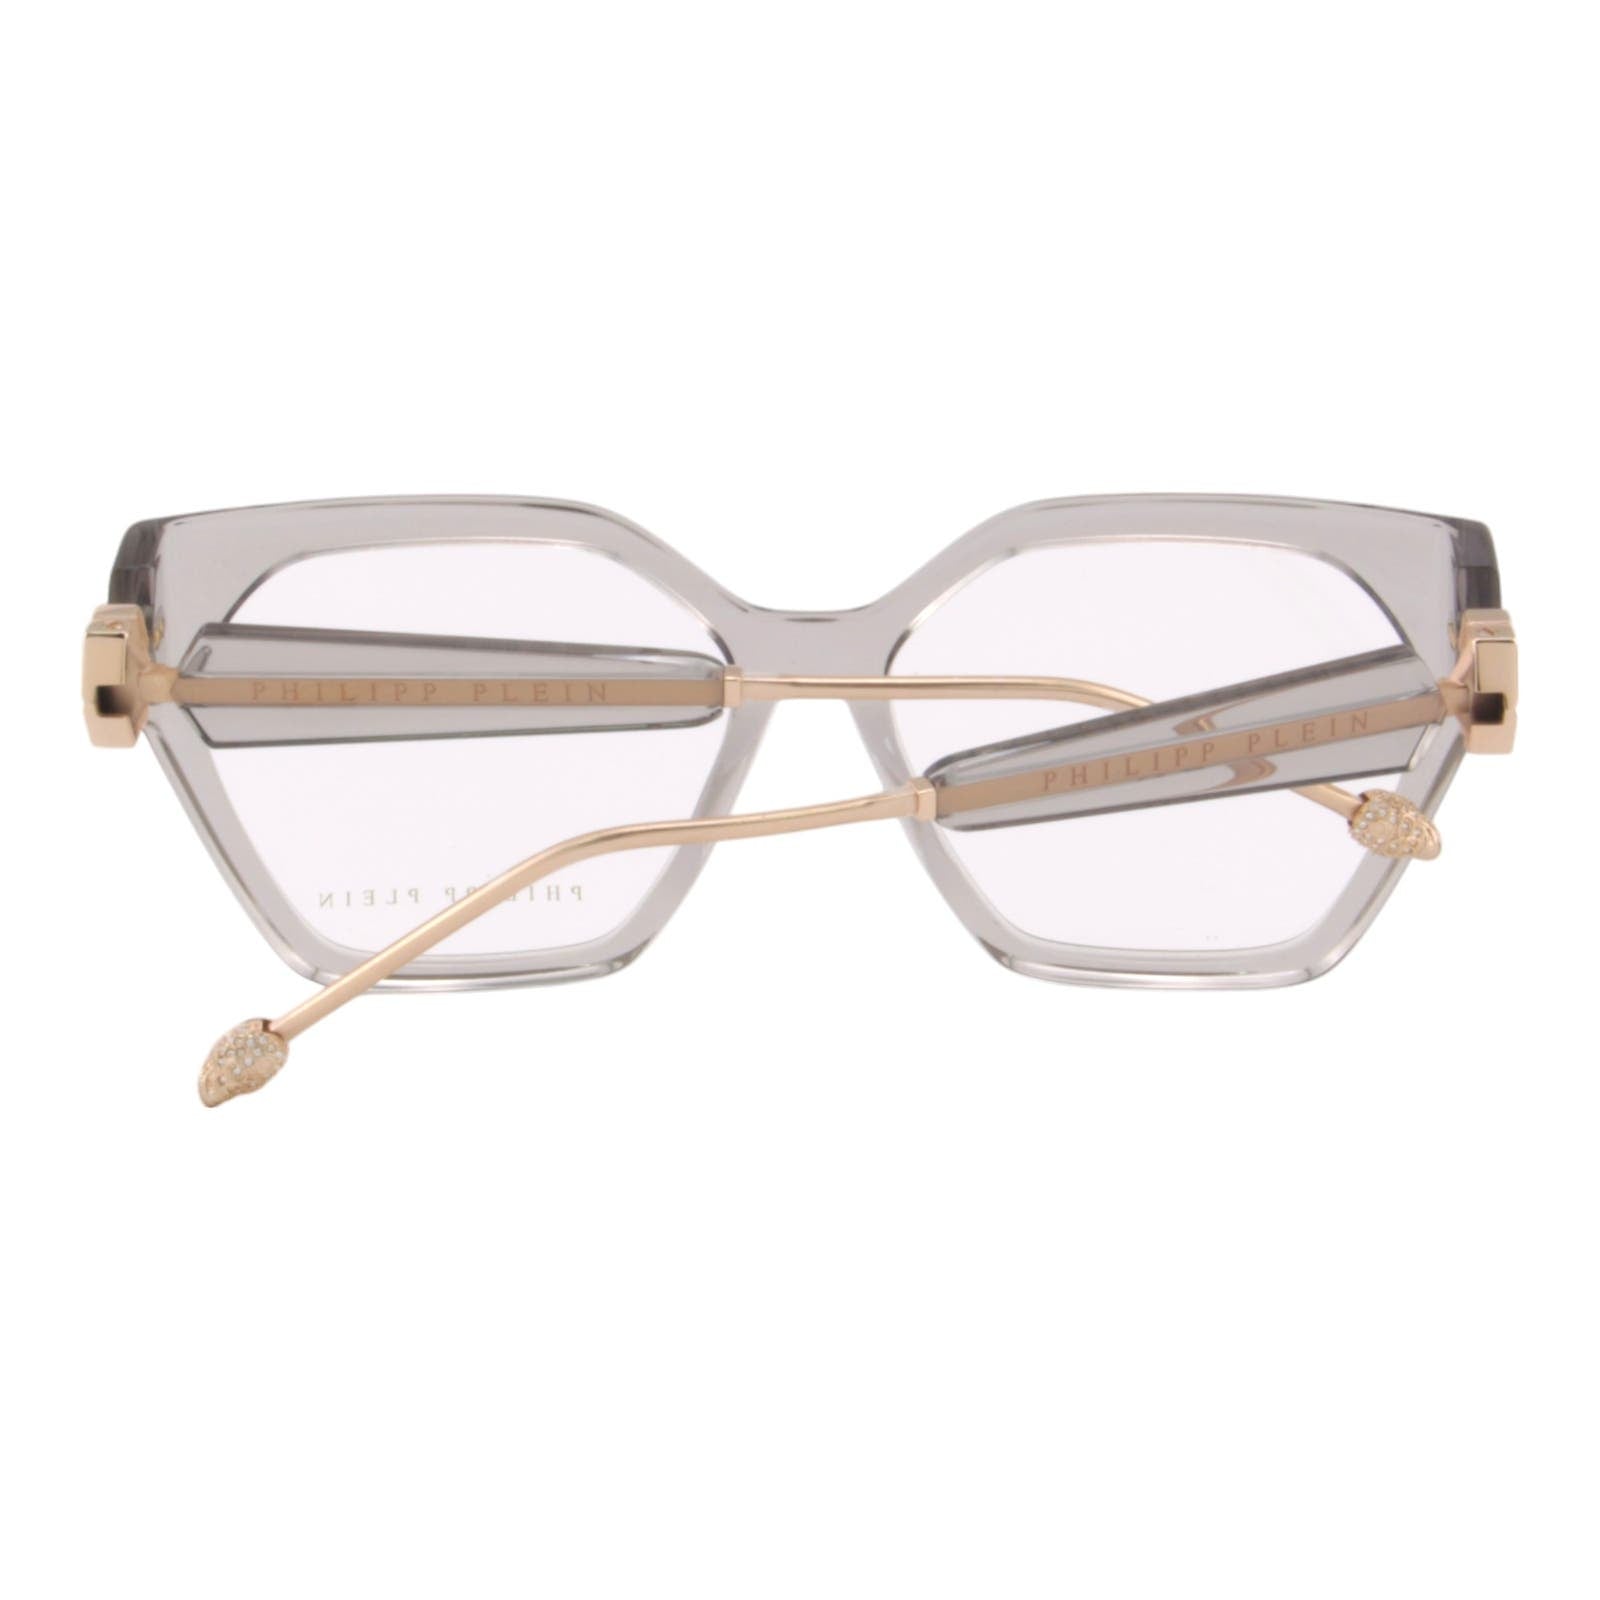 Oversized Women Glasses VPP068S-03GU Gray Transparent Cat-Eye Optical Frame